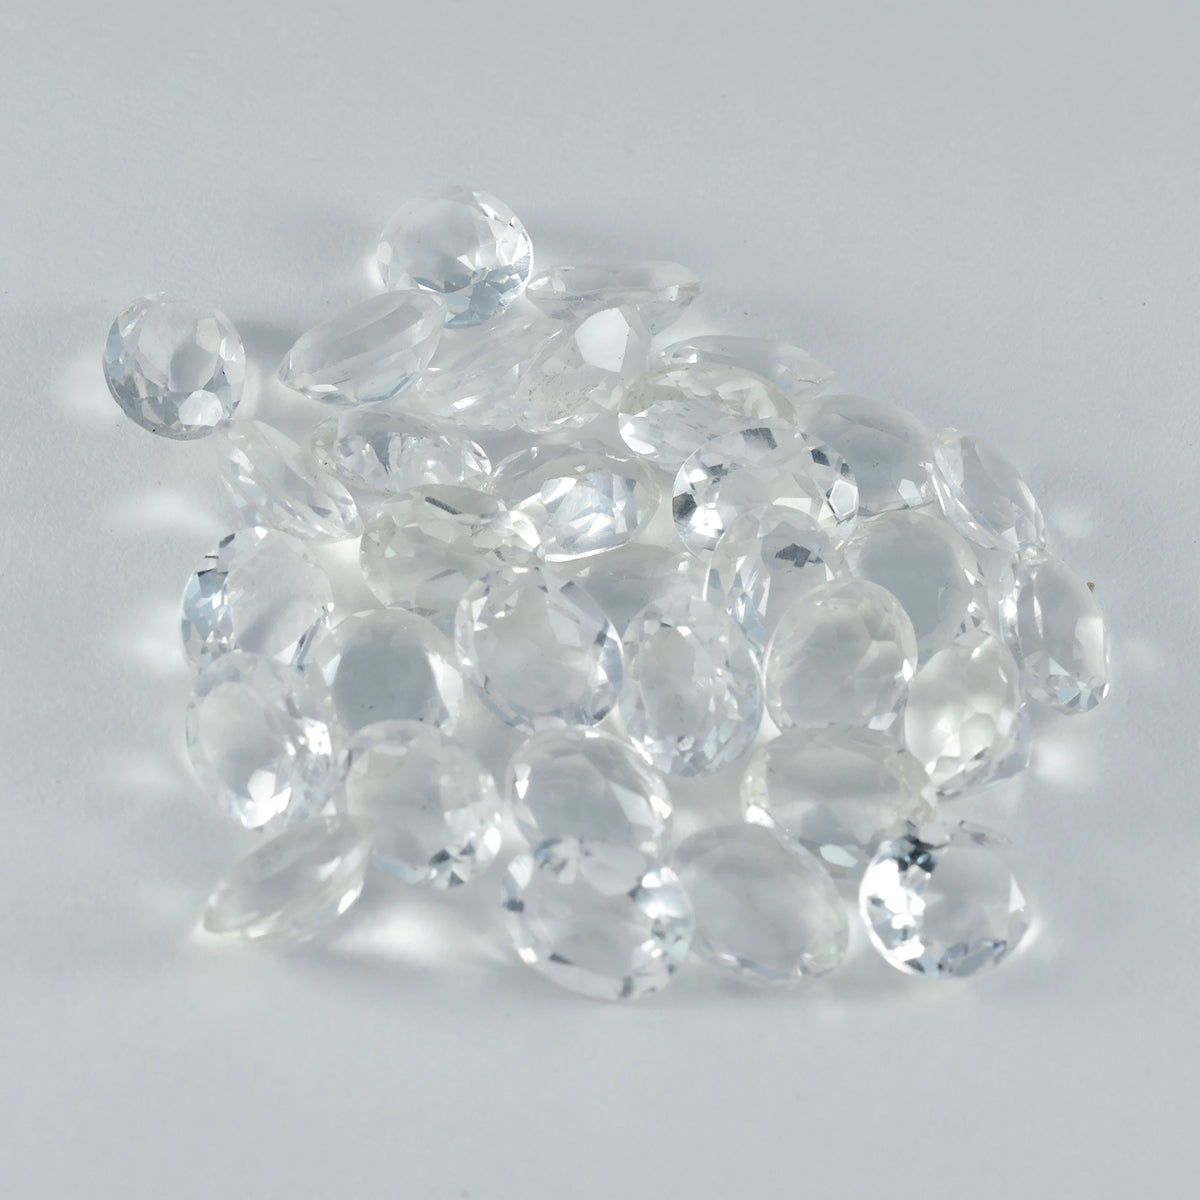 riyogems 1 шт. белый кристалл кварца граненый 4x6 мм овальной формы привлекательное качество свободный драгоценный камень